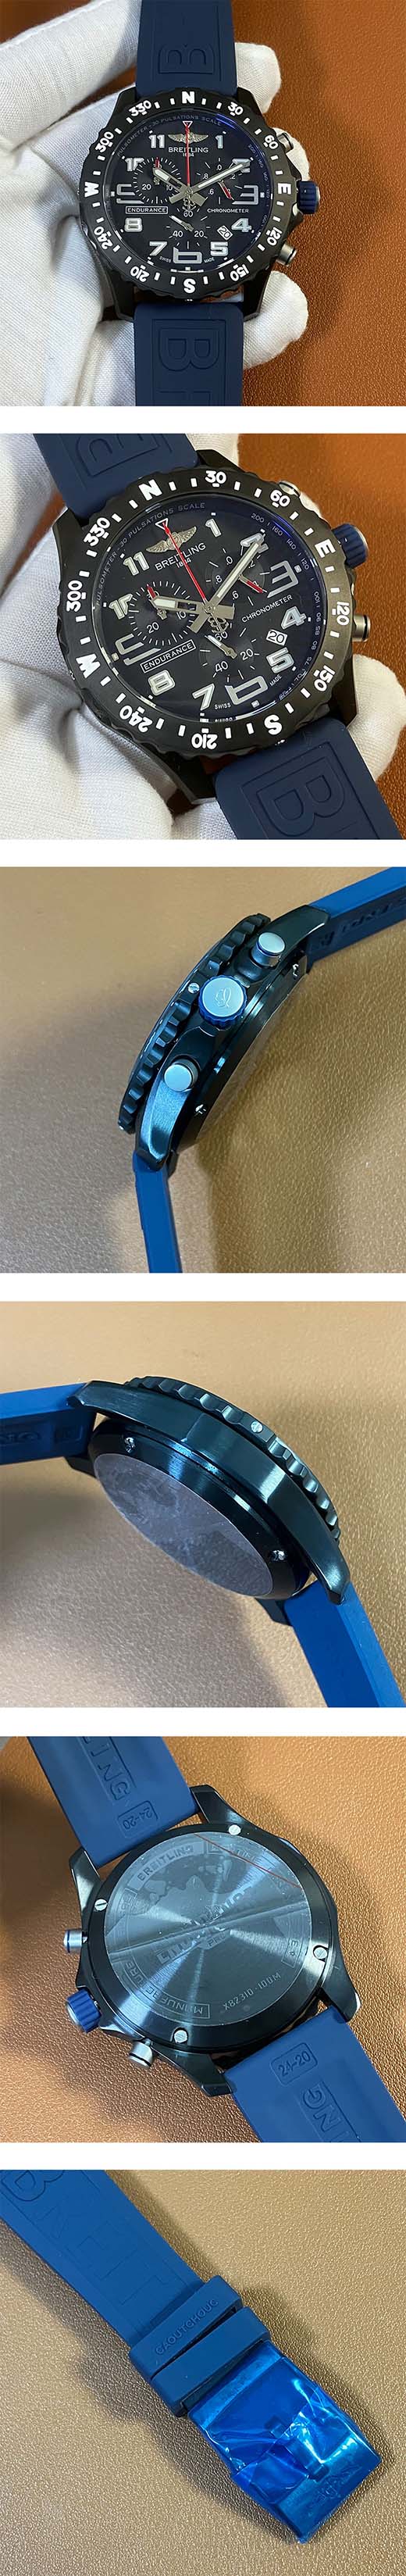 【激安腕時計挑戦】ブライトリング エアロマリンコピー時計 X82310D51B1S1、視認性が抜群